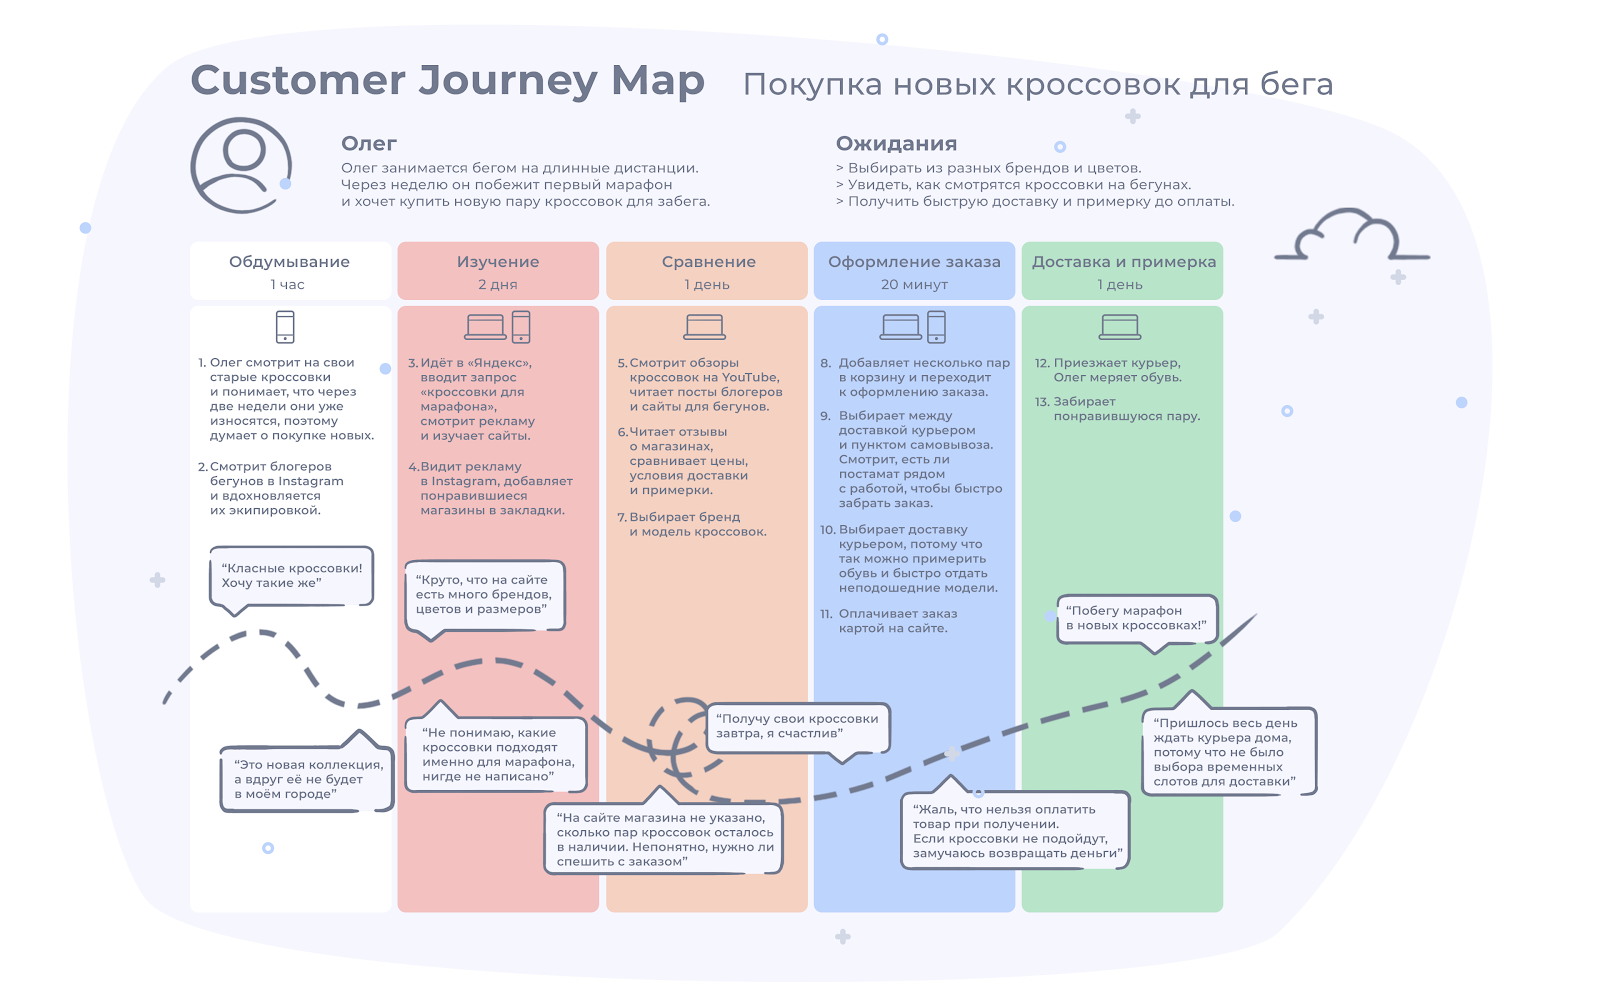 Пример CJM или Customer Journey Map для интернет-магазина, который продаёт ...